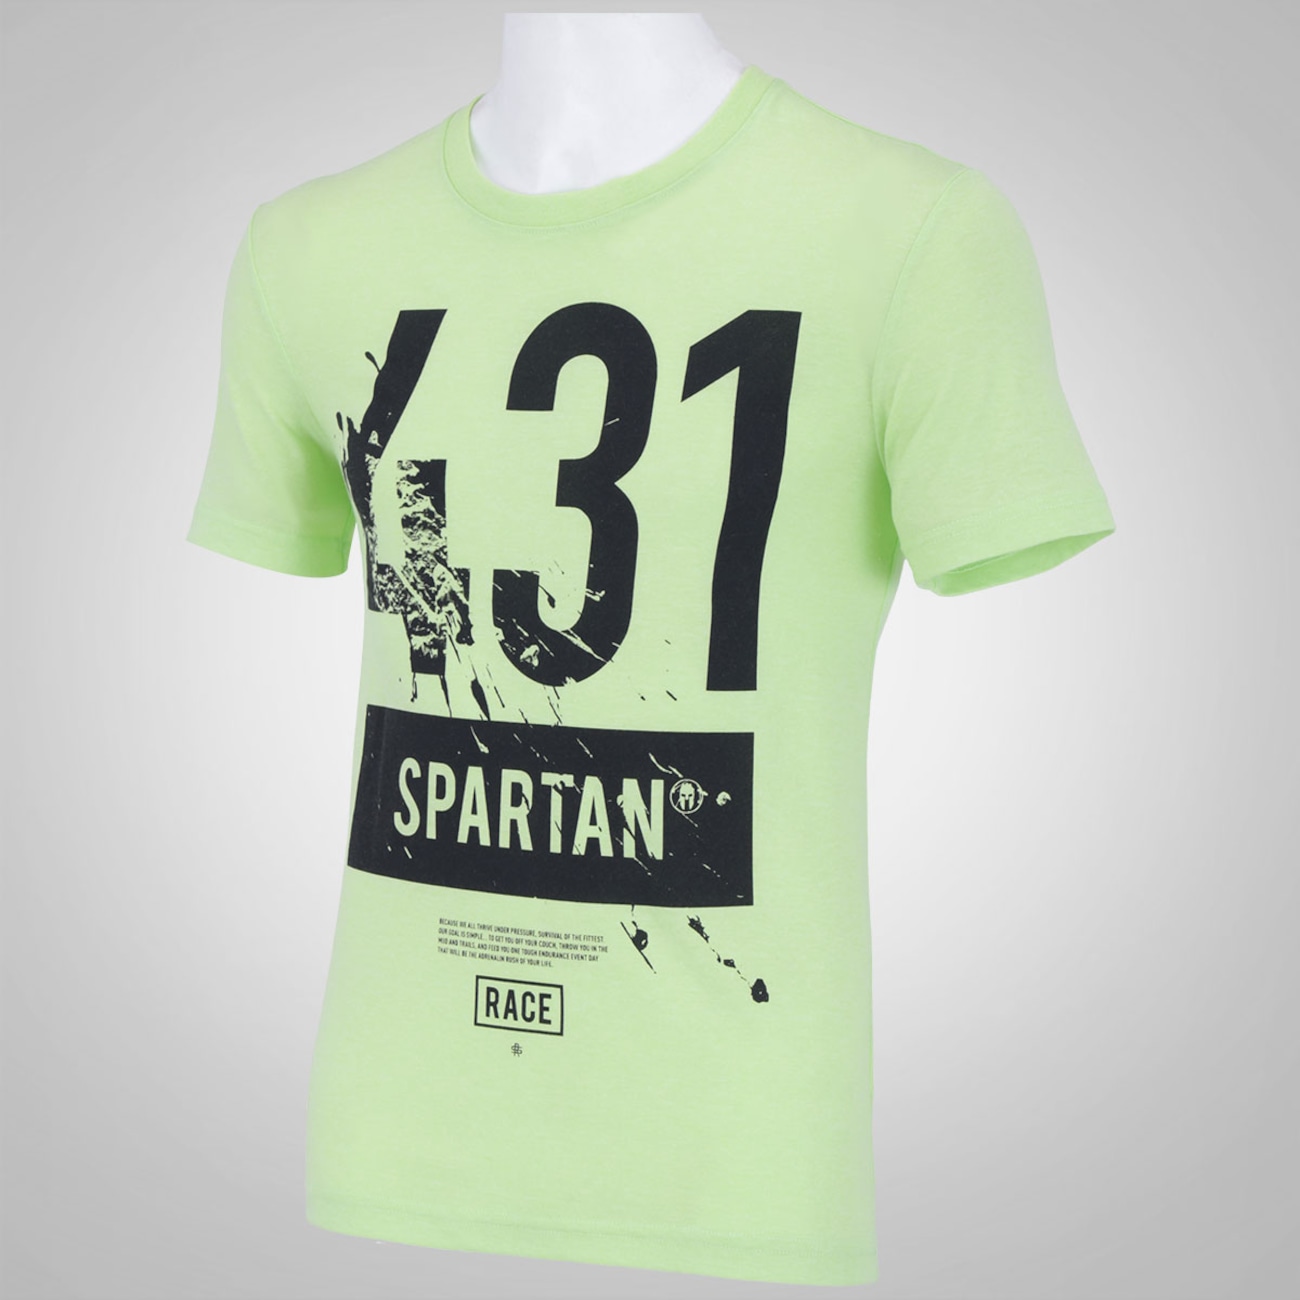 Enfriarse Para exponer Explicación Camiseta Reebok 1 Spartan Race - Masculina - Centauro